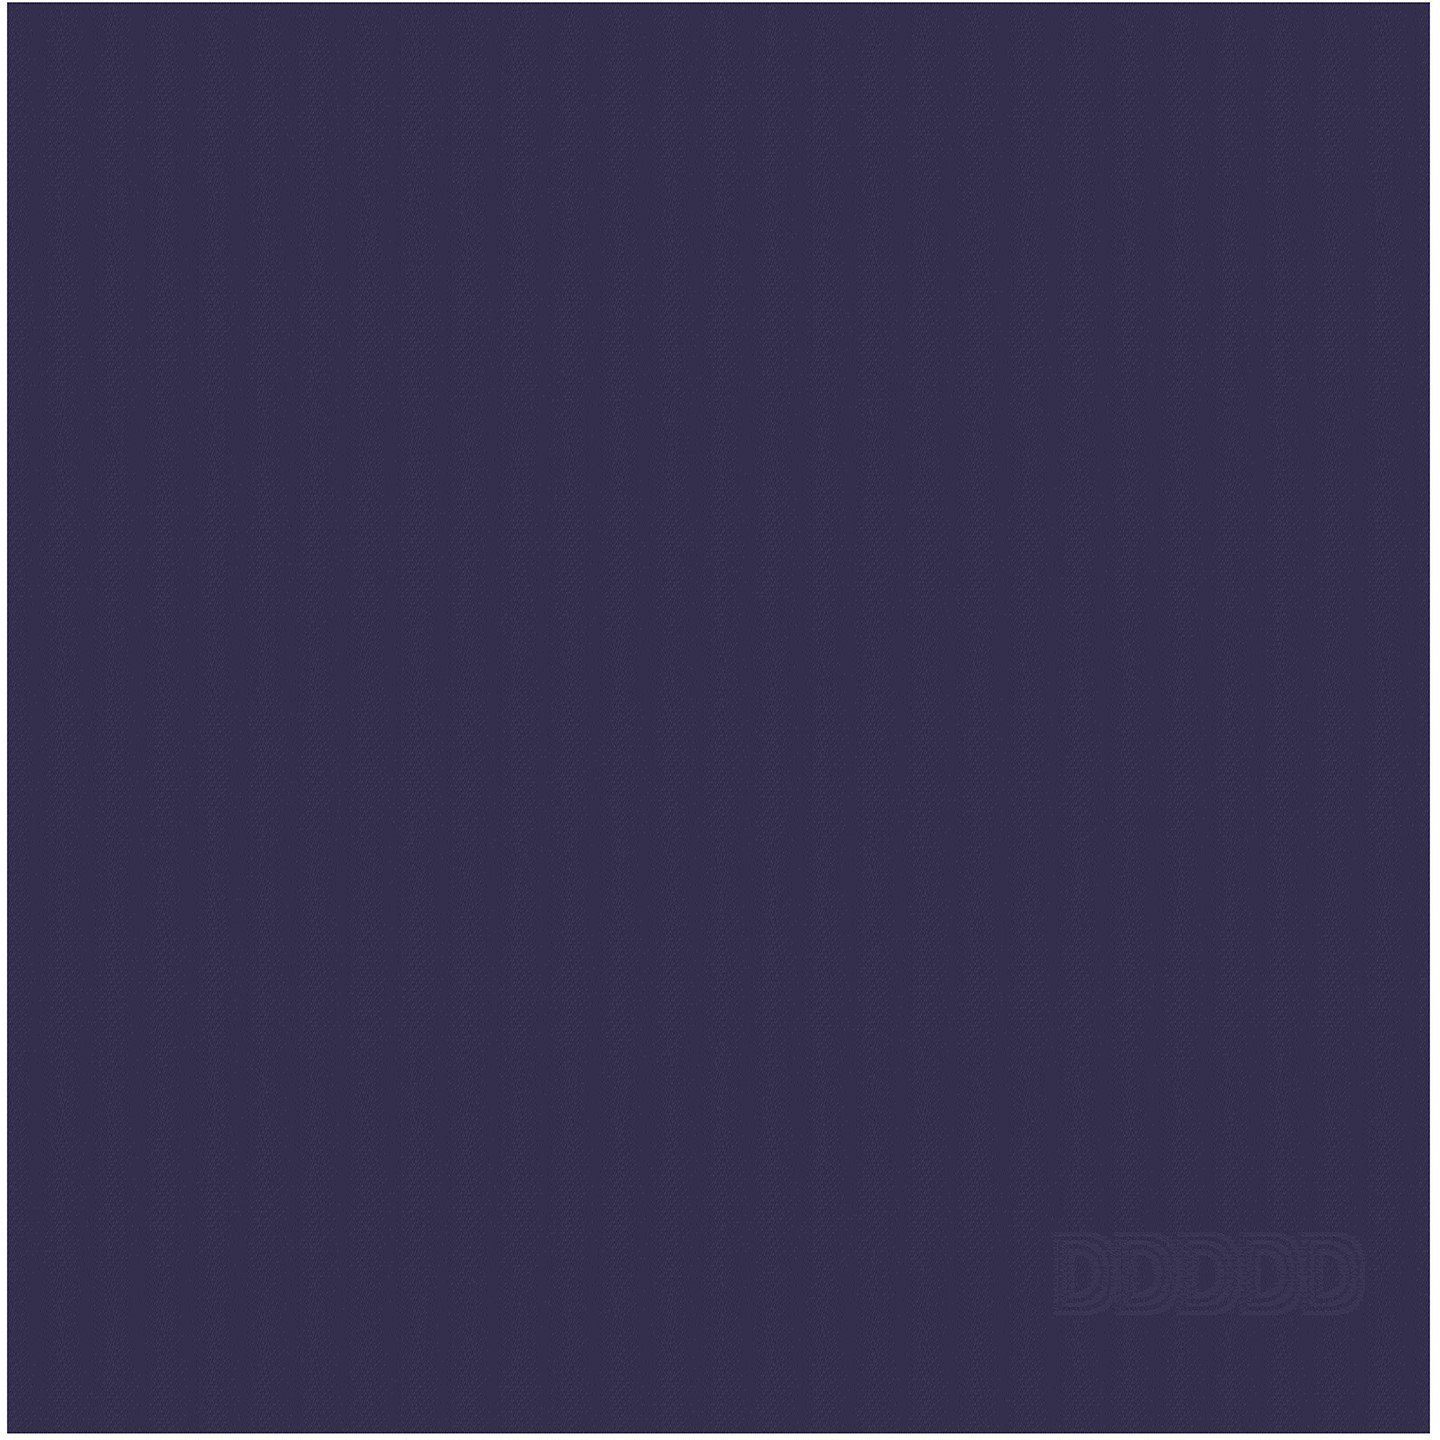 Küchentuch 60 x + cm) DDDDD 2x Logo, 2x 65 blau x Geschirrtuch Geschirrtuch 55 (Set, Combi-Set: 50 4-tlg., cm